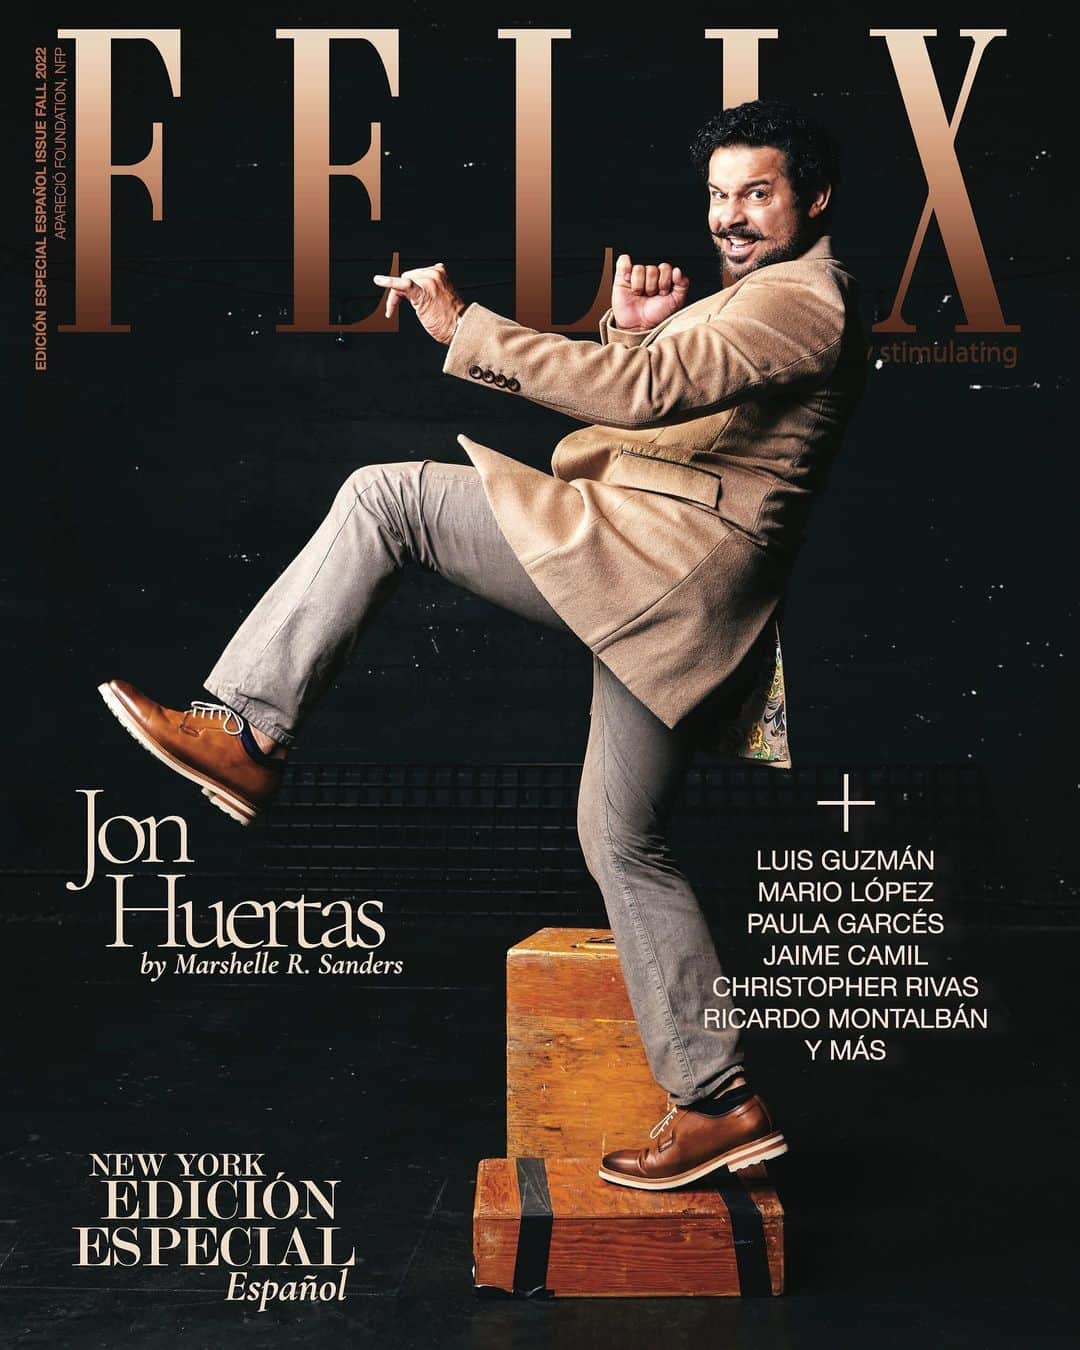 ジョン・ウエルタスのインスタグラム：「Check out the latest @FelixMagazine interview with #ThisIsUs star @JonHuertas! Get the inside scoop on what it was like to play Miguel, his life on set and more! #NBC #TVShow #actor #interview . . . Jon is our next cover star for @felixmagazine Español Special Edition New York Issue. The 2022 Fall Issue is available now on @magcloud. . . . Credits:  Jon Huertas: @jonhuertas Meagan Shuptar: Photographer  @meaganshuptar  Grooming:  @saraibeautyy of @bossomakeupbeverlyhills Features Editor/Creative/Lead Stylist: @cravisuals Christina Rosas Anastasiou Showroom Partner Regard Style House @regardstylehouse  Fashion Director: @ksstyleconsulting Katie Schuppler  Jessica George: Publisher & Founder @Jessicanhgeorge  Marshelle R. Sanders: Writer @mtheebartender Associate Editor: Katie Mikesell Sarah Vargo: Copy Editor @stargolove  Photo Editor: Brianna Kish @briannalk007 .  .  . All net proceeds from @felixmagazine advertisement sales benefiting @apareciofoundation and girls’ education. . . . #Latinos #Hollywood #Spanish #Espanol #SpecialEdition #GivingBack #Charity #Fashion #FelixMagazine #Inspiration #Storytelling #MagCloud #AparecioFoundation #Education #FelixMag #FallIssue #FelixCharitableLife #thoroughlystimulating」